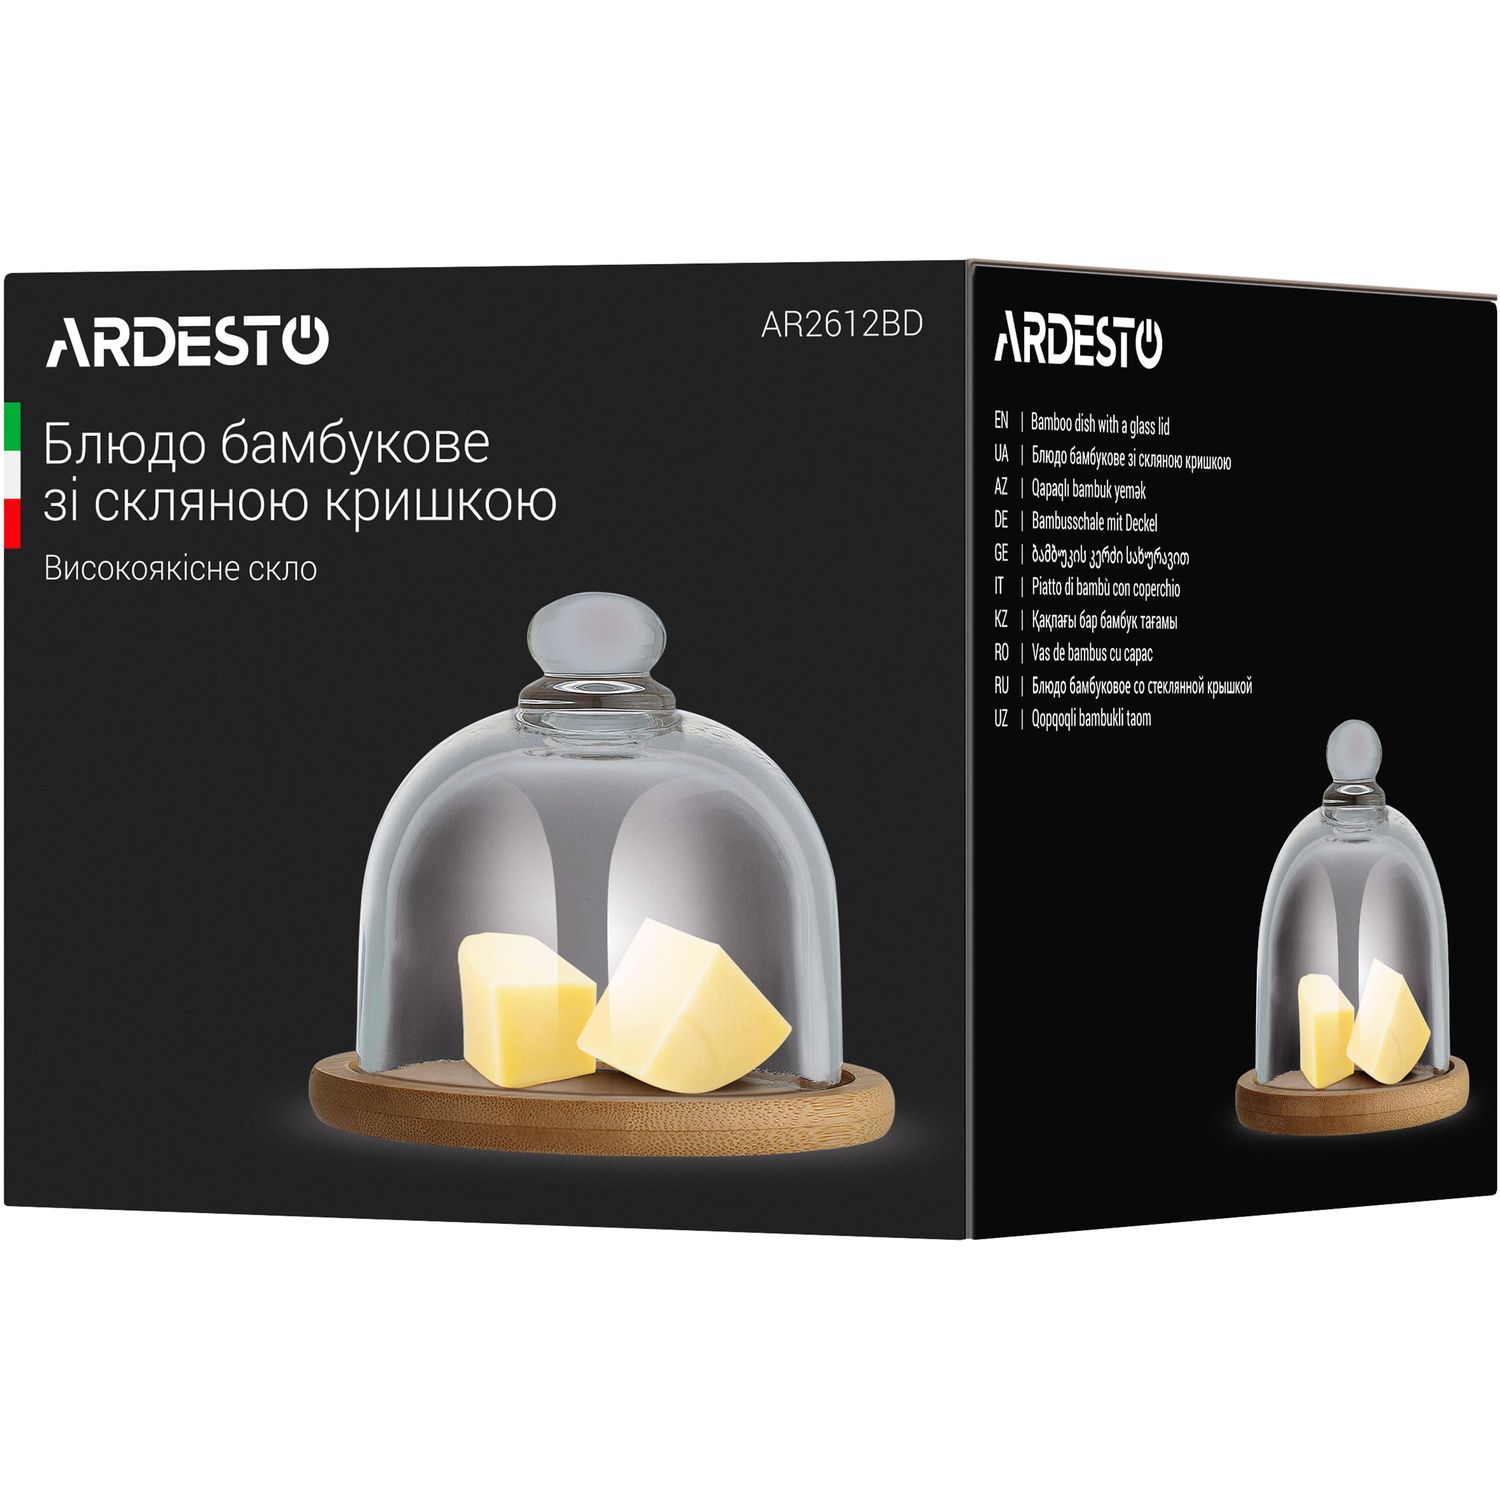 Блюдо бамбукове Ardesto зі скляною кришкою, 12 см (AR2612BD) - фото 4